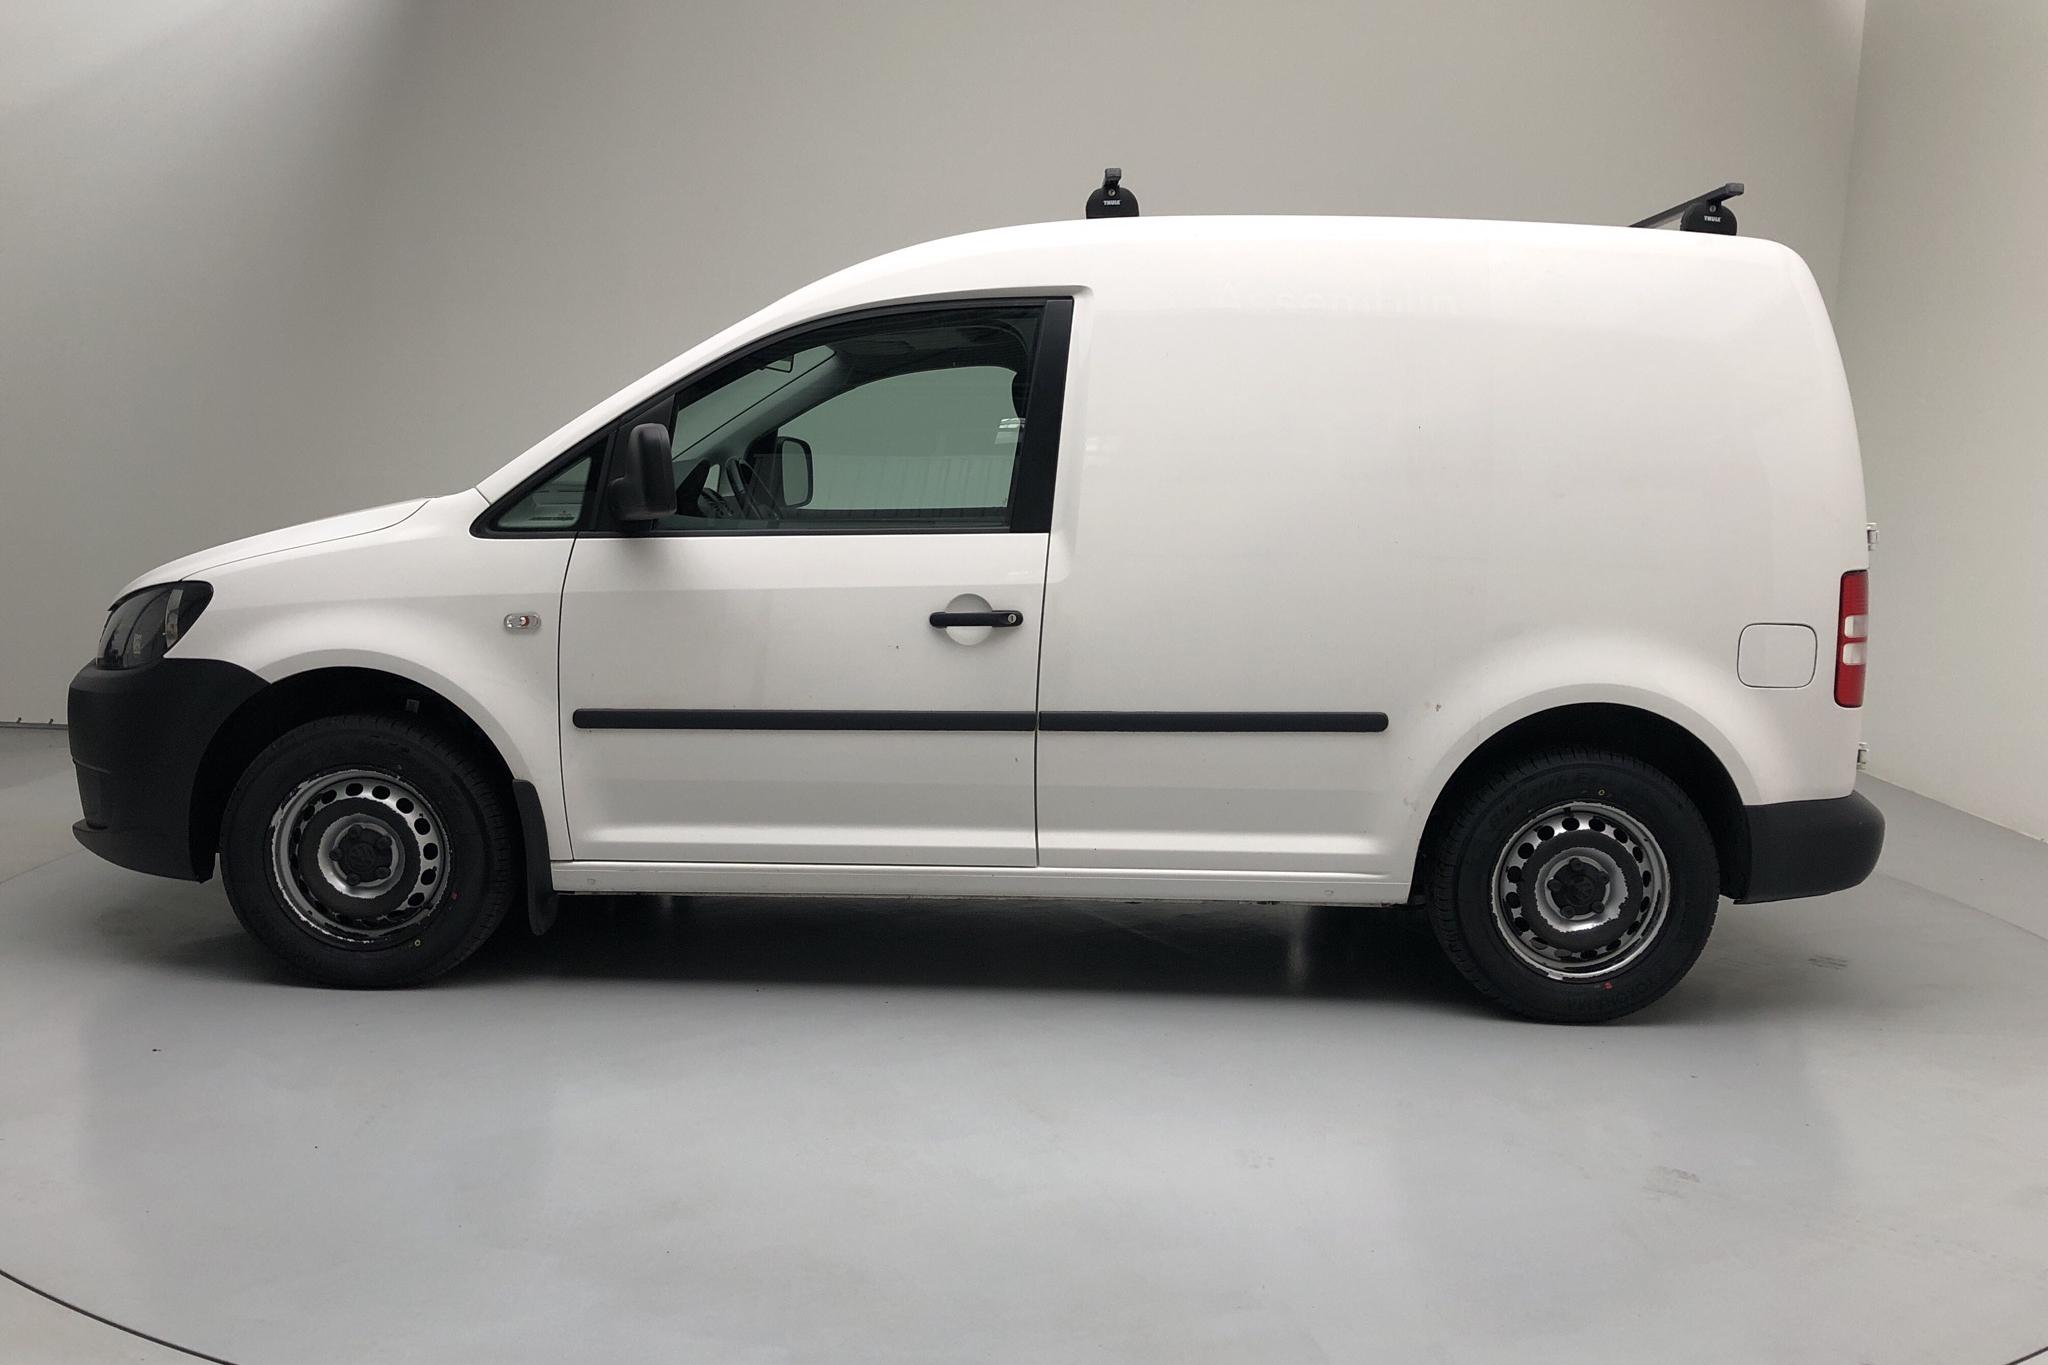 VW Caddy 1.6 TDI Skåp (102hk) - 86 610 km - Manual - white - 2015